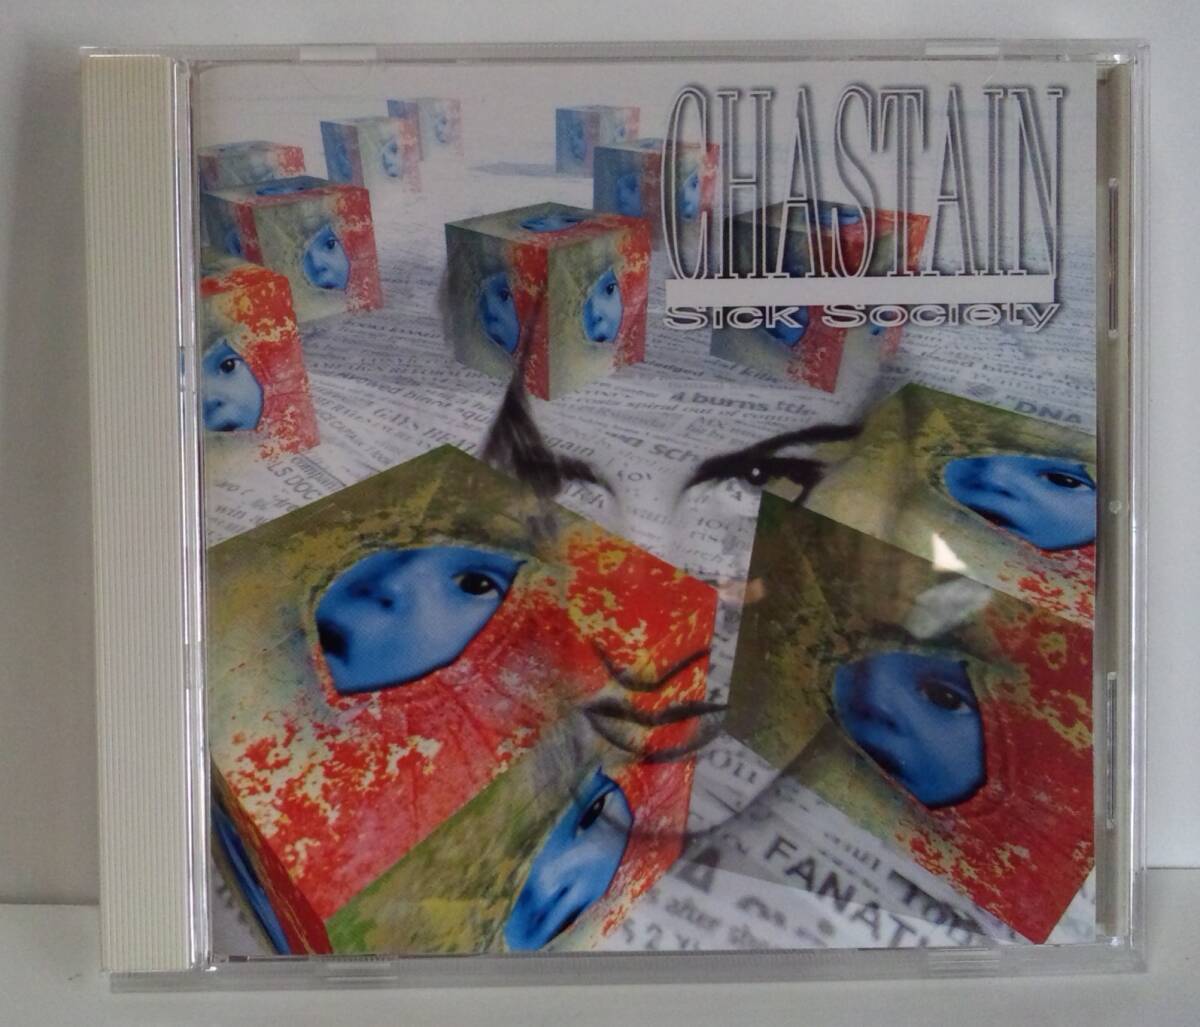 [1996年発売/日本盤] チャステイン / シック・ソサエティ [ Chastain / Sick Society ] ●DAVID T. CHASTAIN デヴィッド・チャステイン_画像1